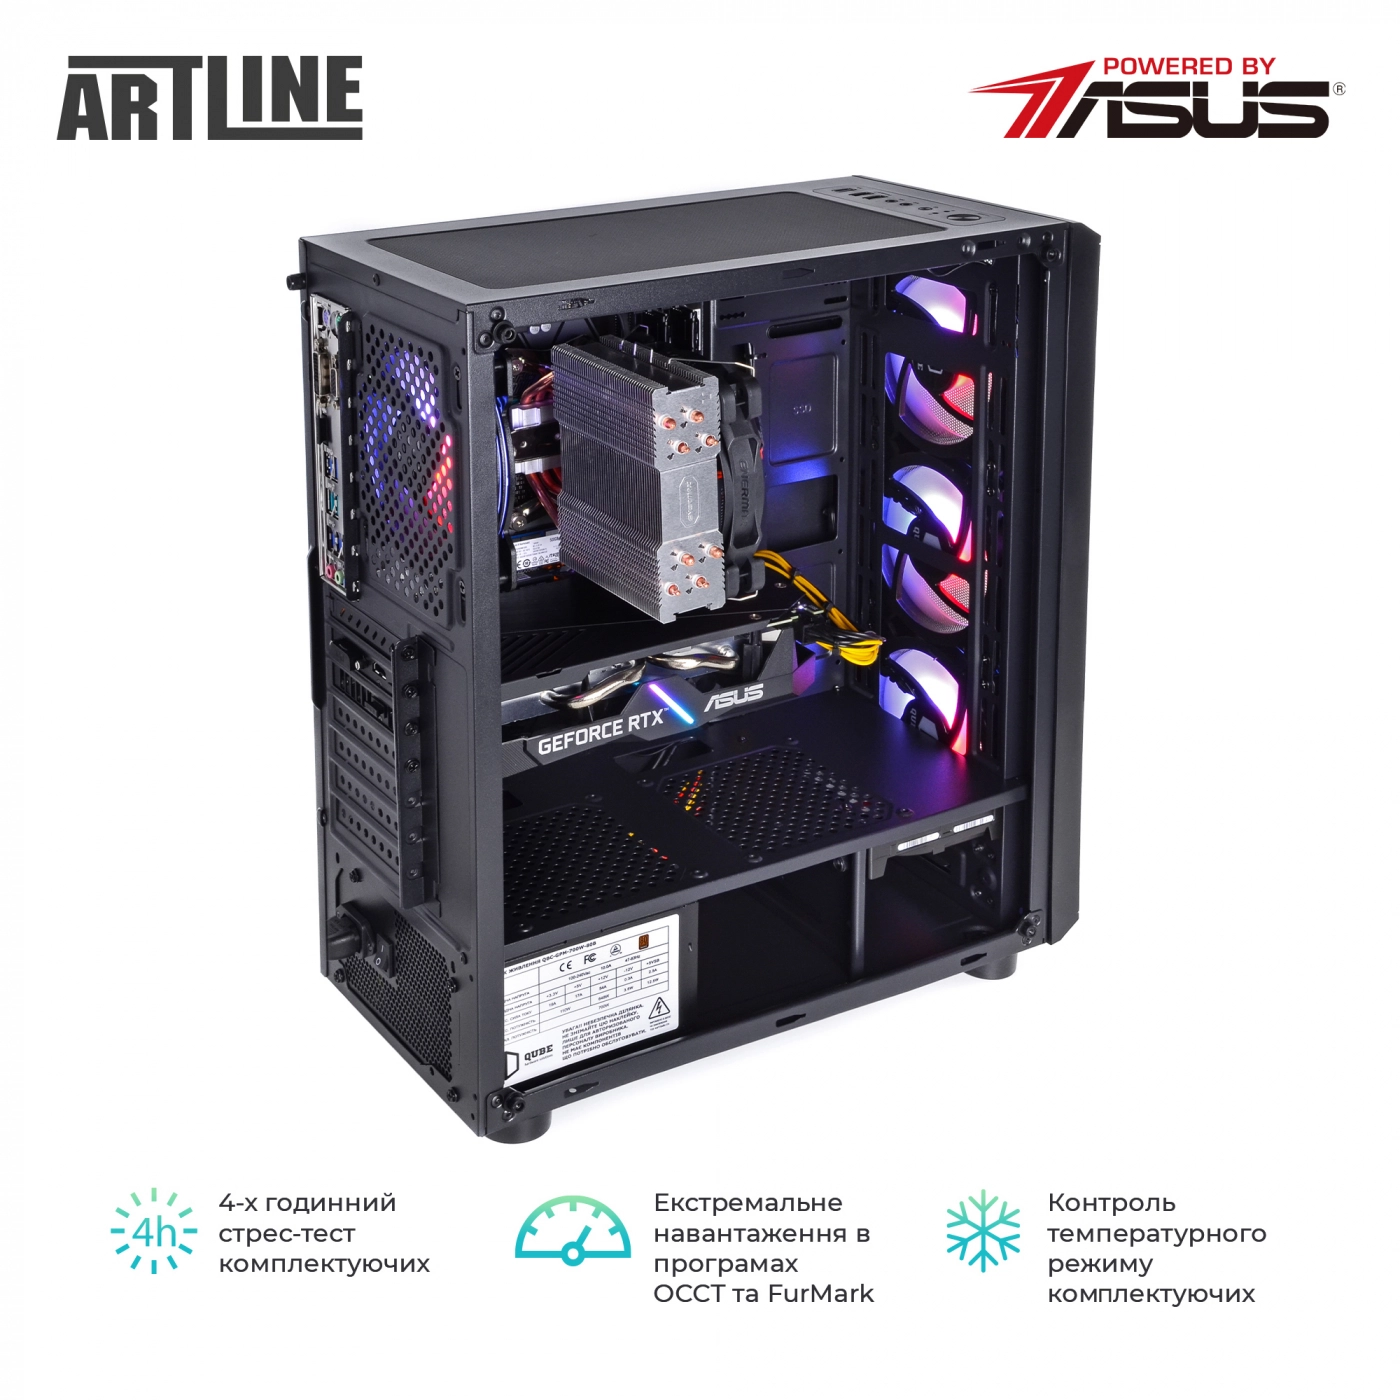 Купить Компьютер ARTLINE Gaming X59v28 - фото 9